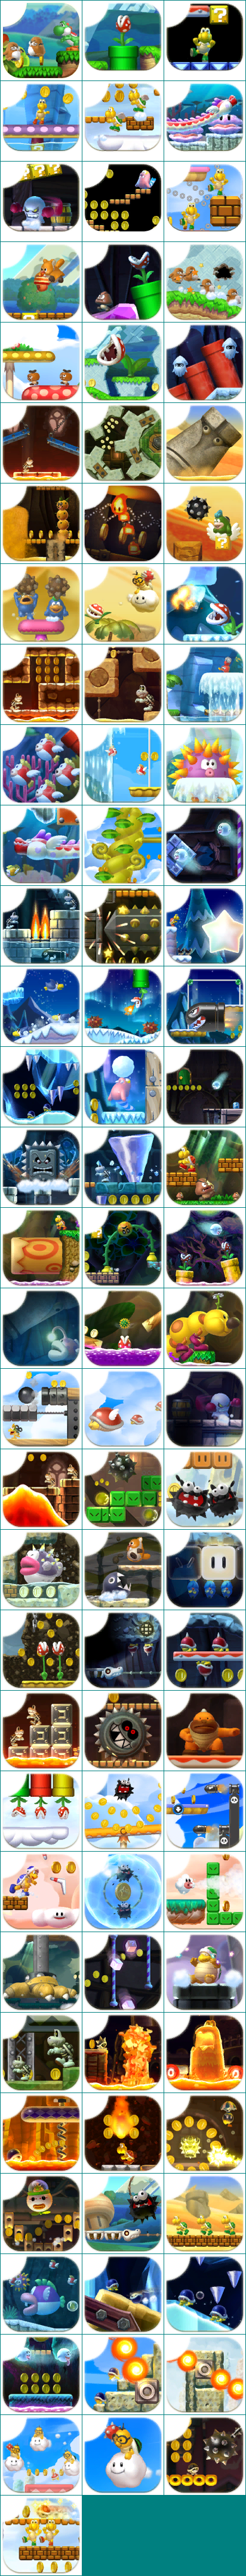 New Super Mario Bros. U / New Super Luigi U - Level Icons